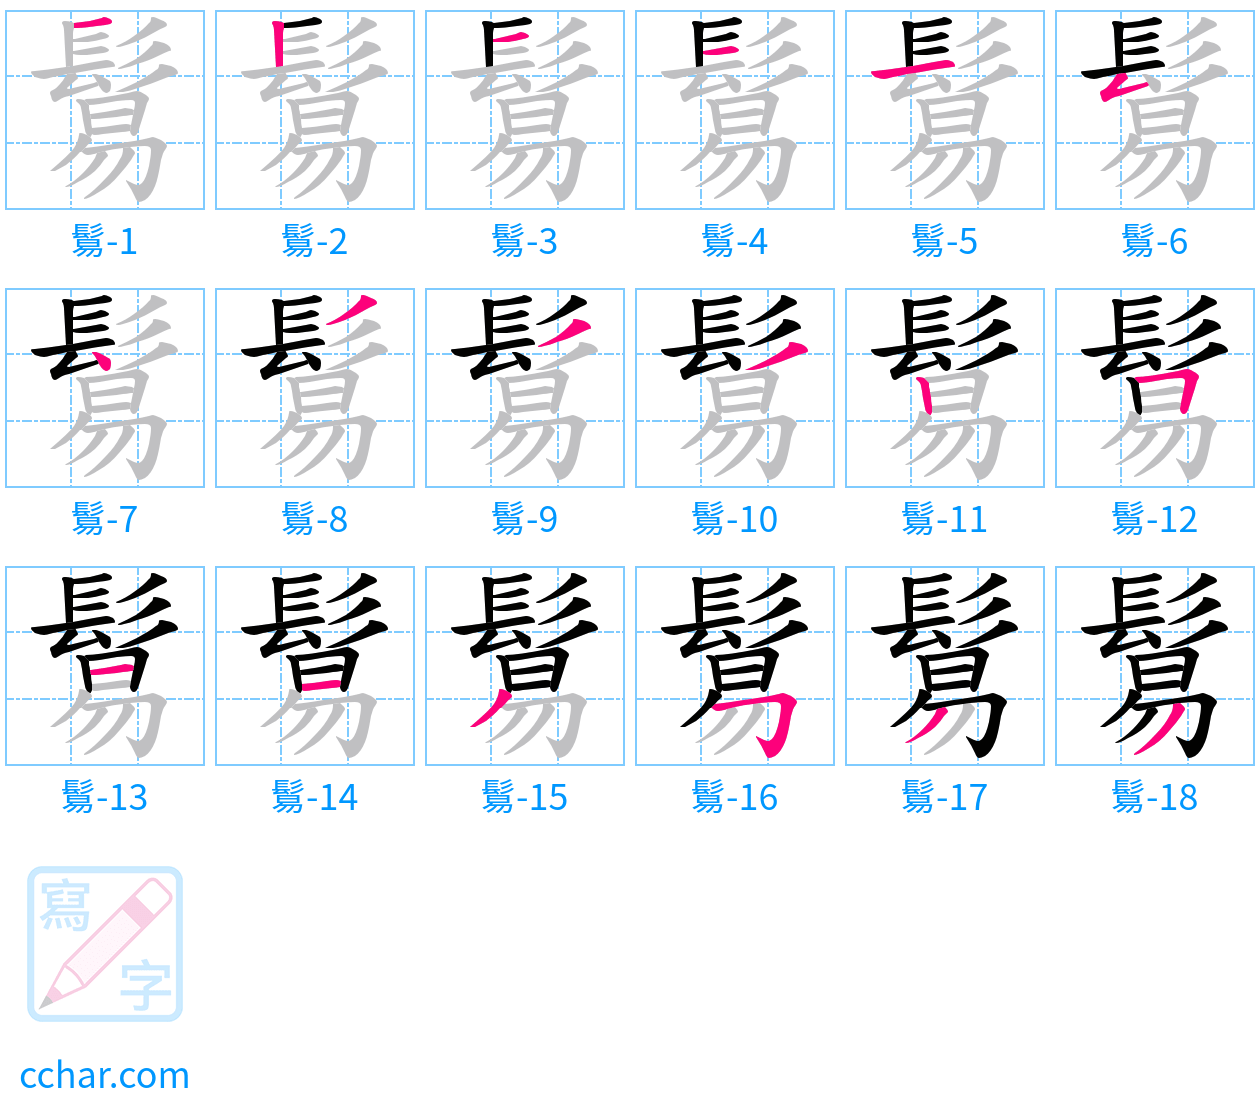 鬄 stroke order step-by-step diagram